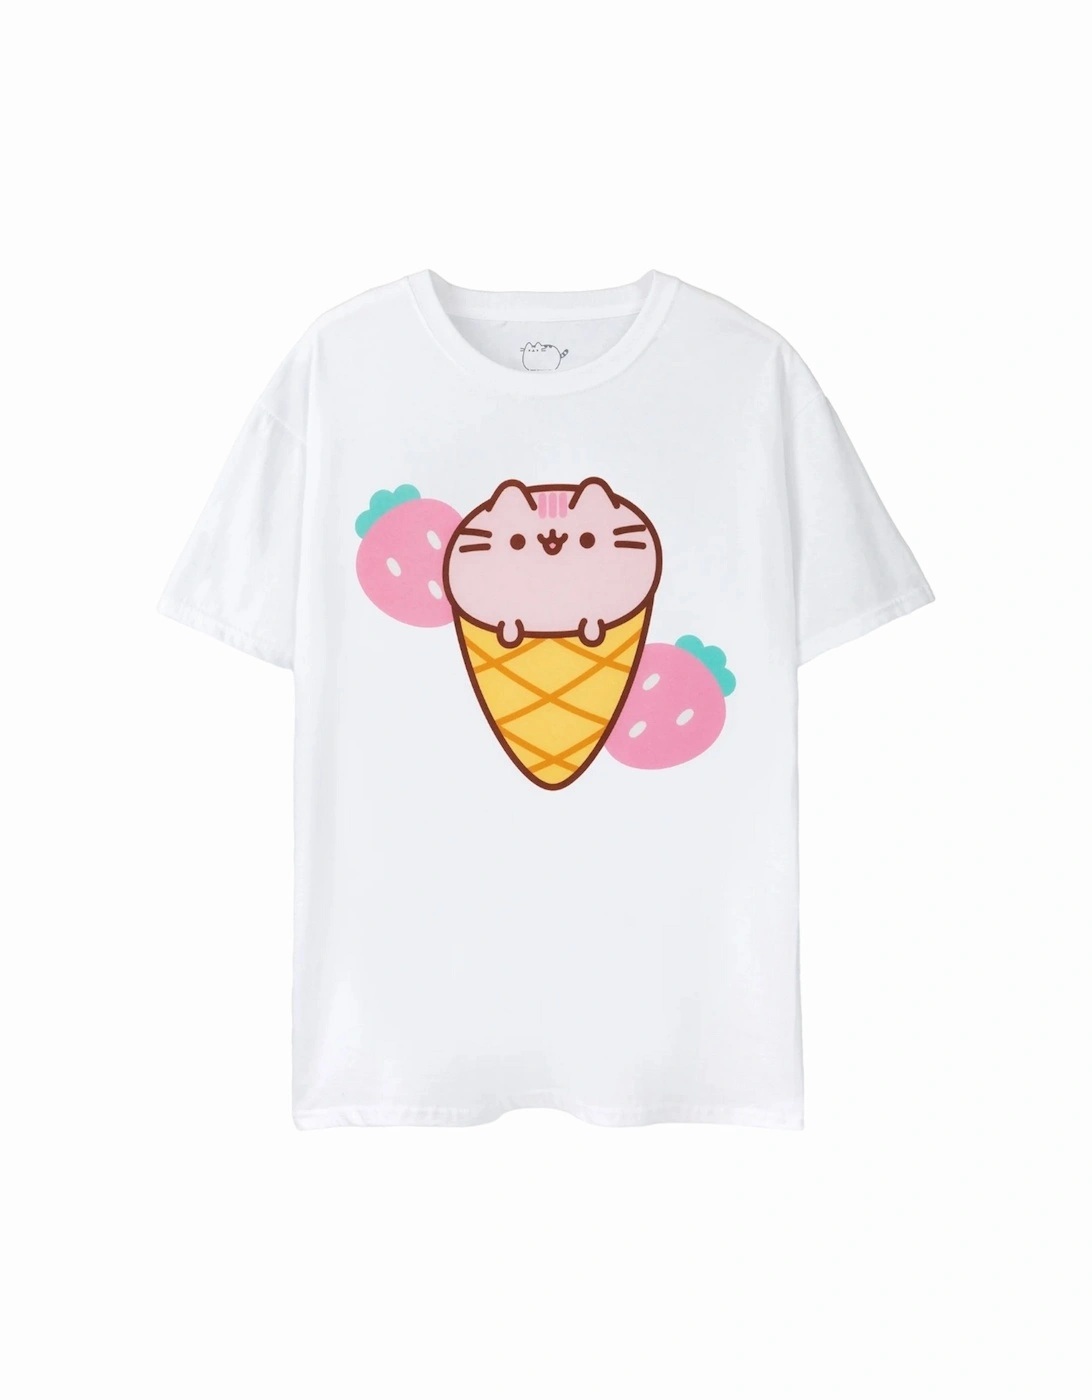 Womens/Ladies Ice Cream T-Shirt, 4 of 3